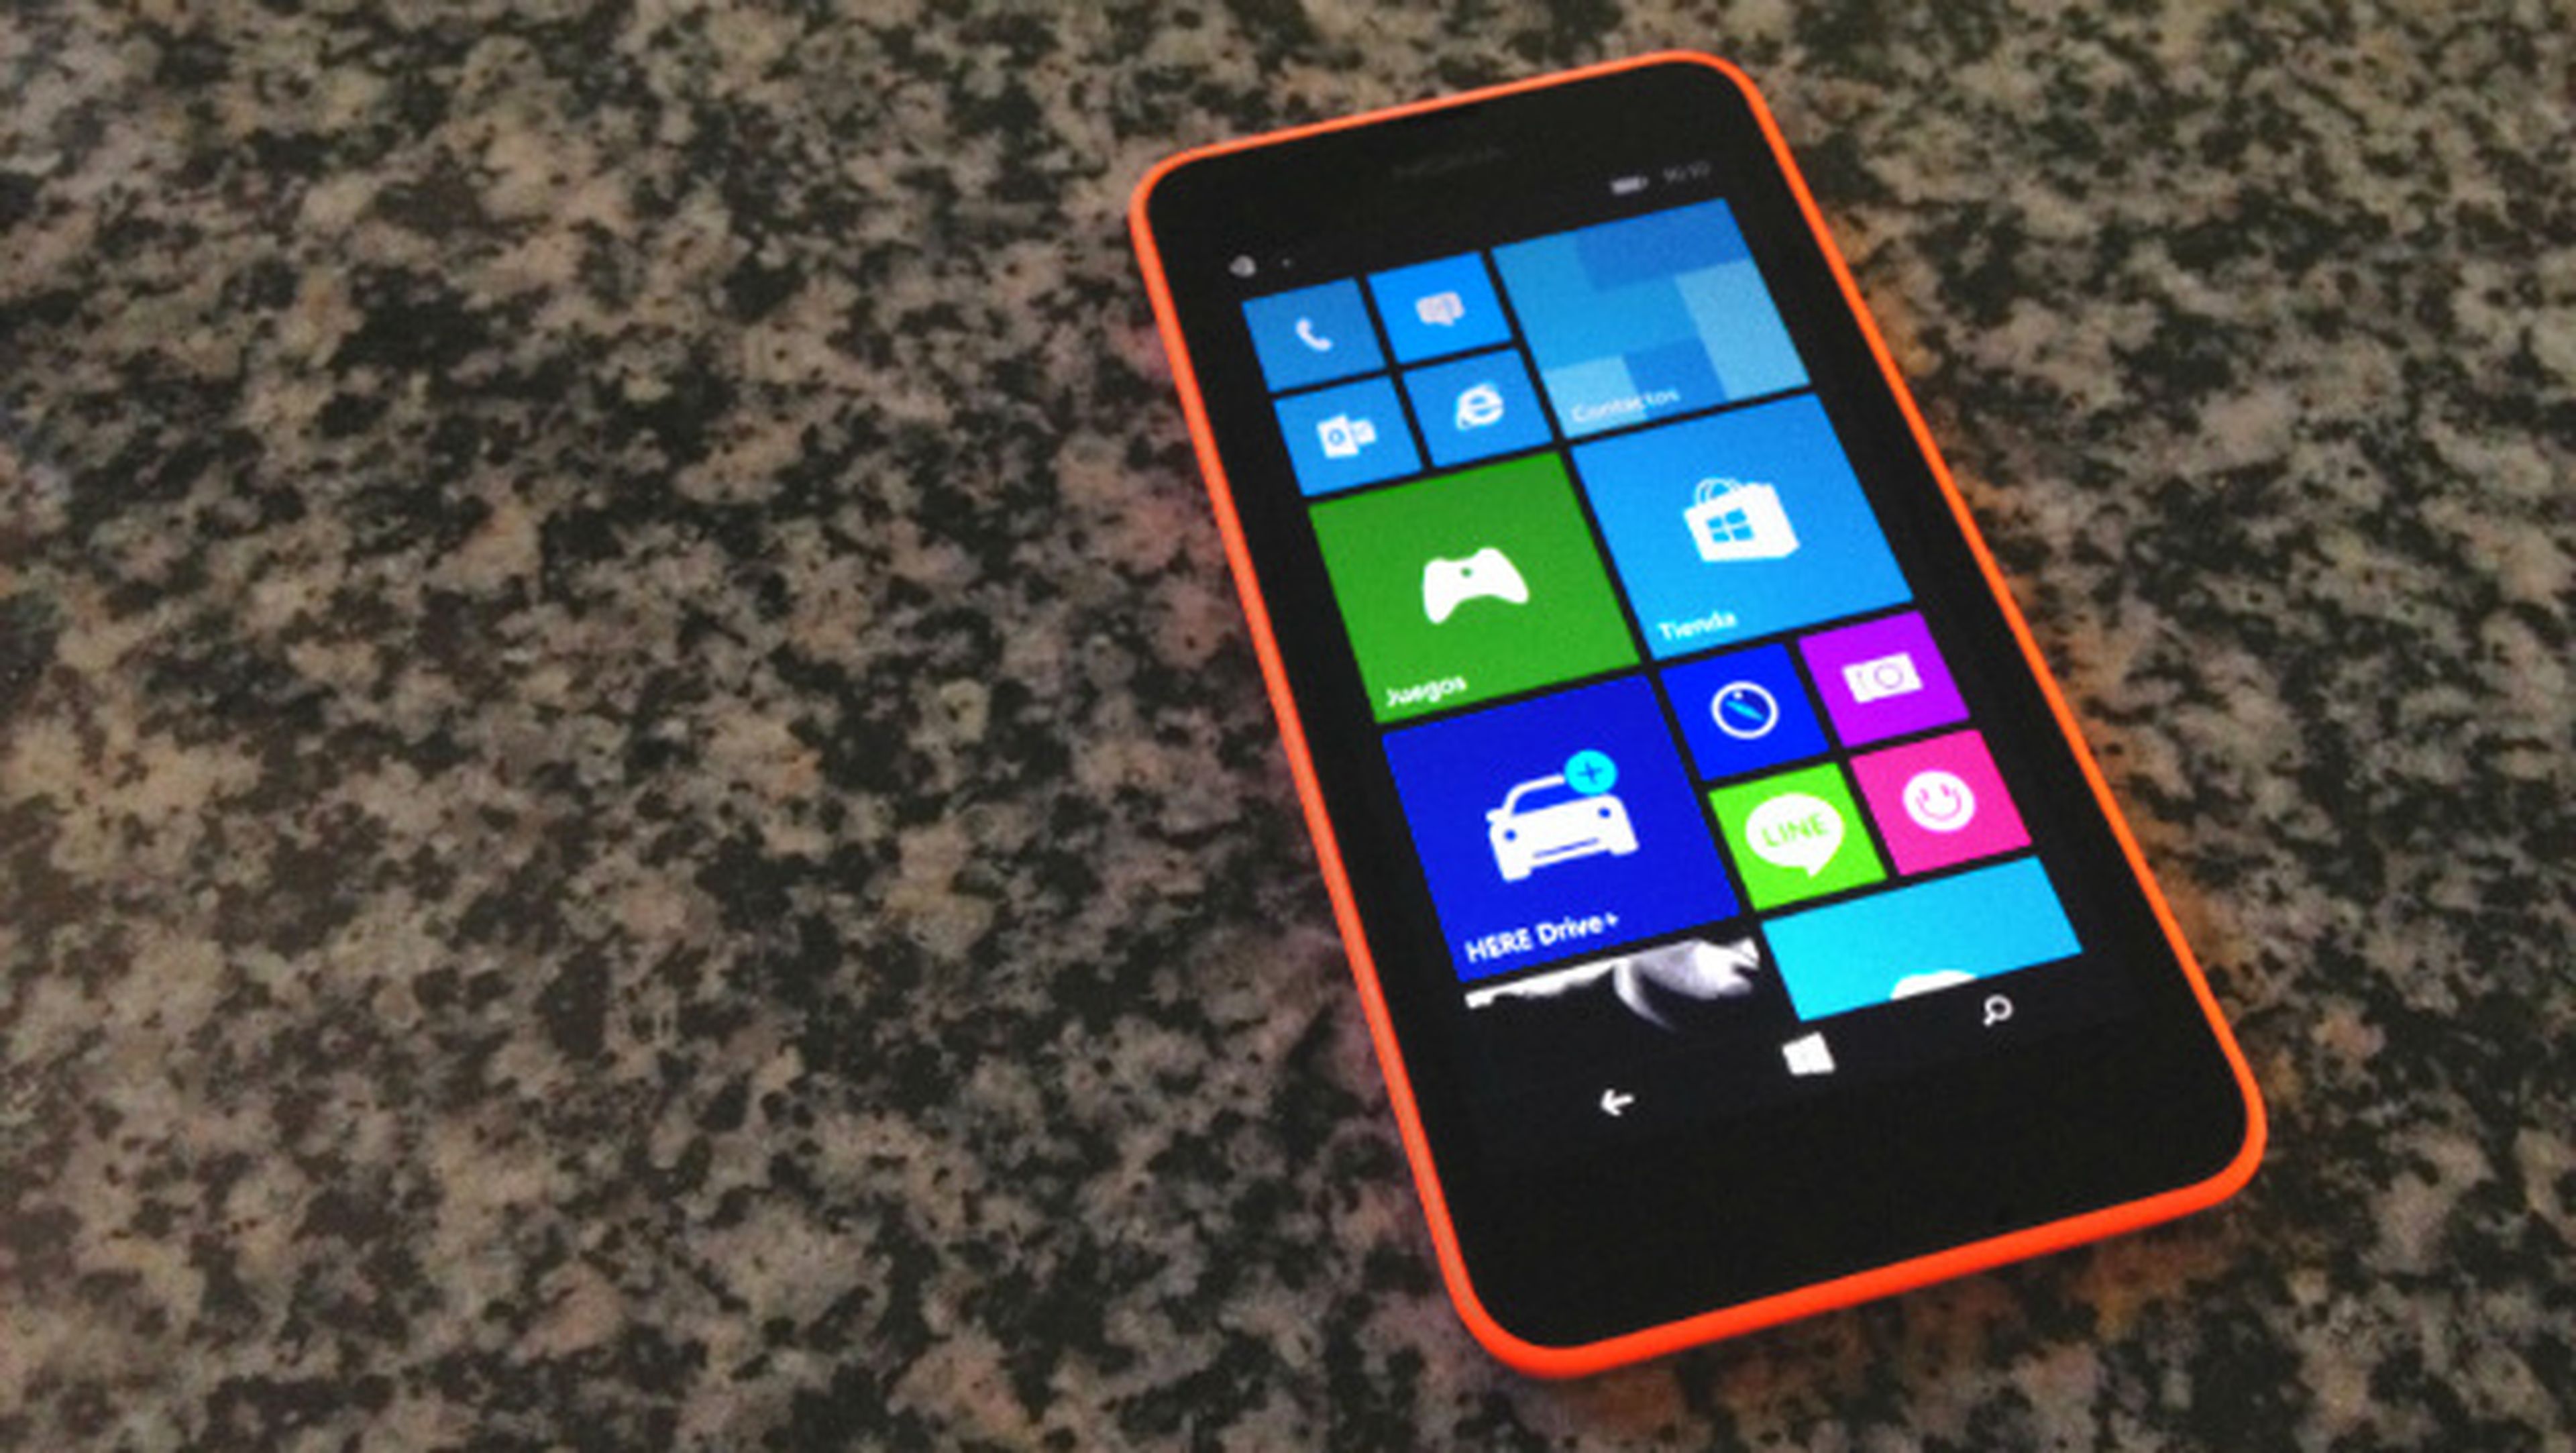 Nokia Lumia 630: anÃ¡lisis del low-cost con Windows Phone 8.1